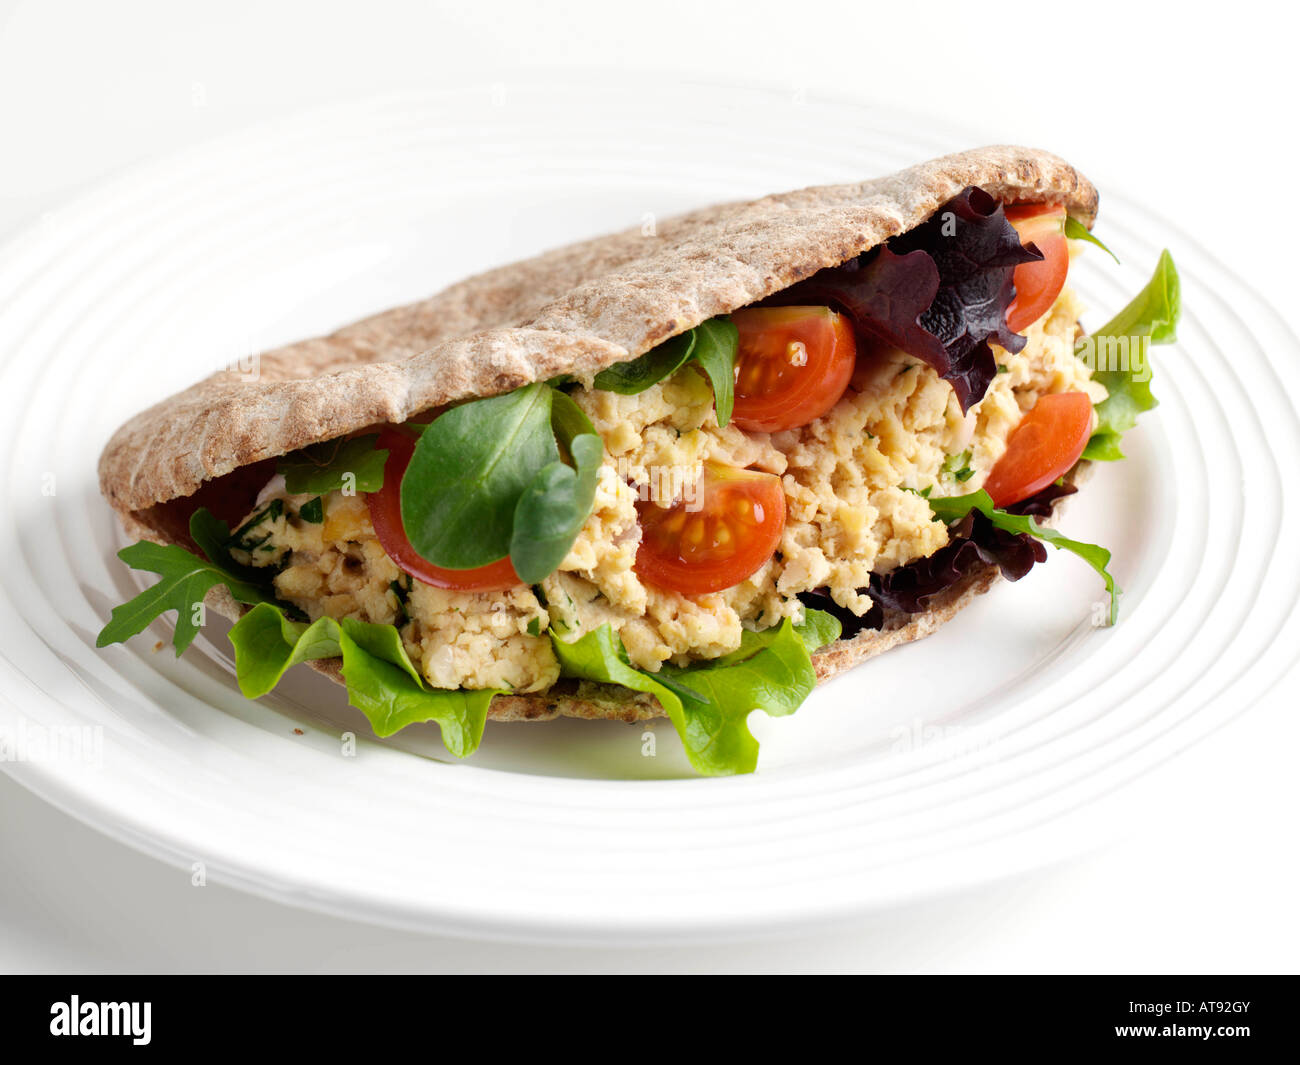 Vegane Hummus und Sellerie in Pita Brot Meze redaktionelle Essen Stockfoto